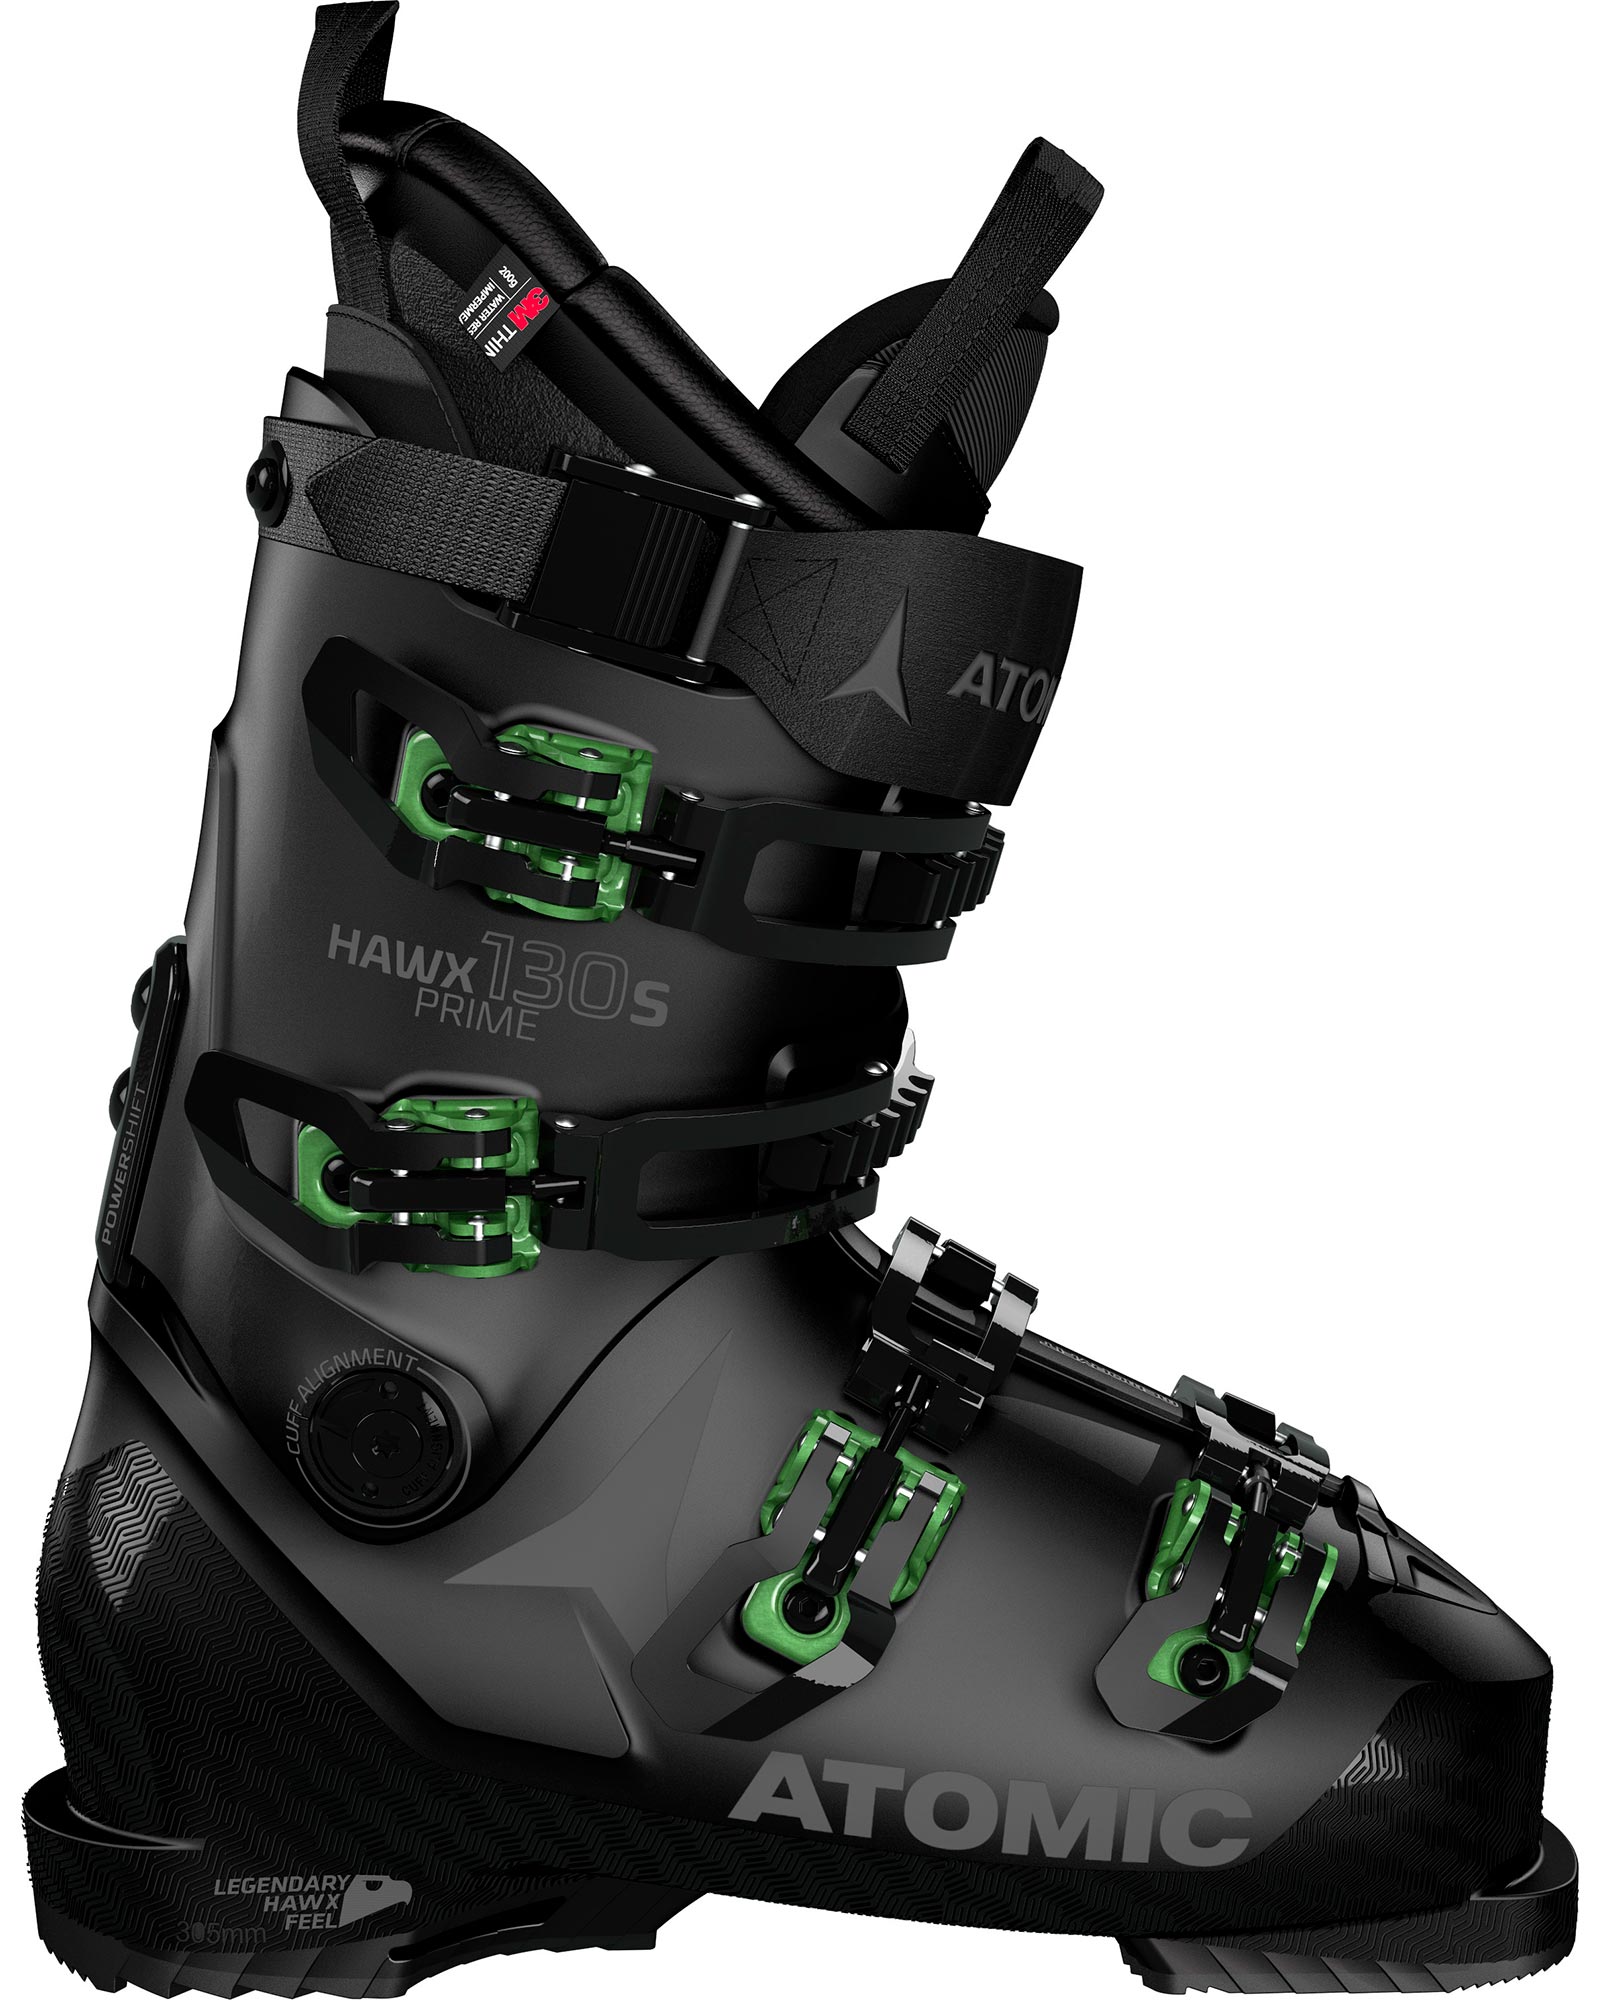 Atomic Hawx Prime 130 S Men’s Ski Boots 2021